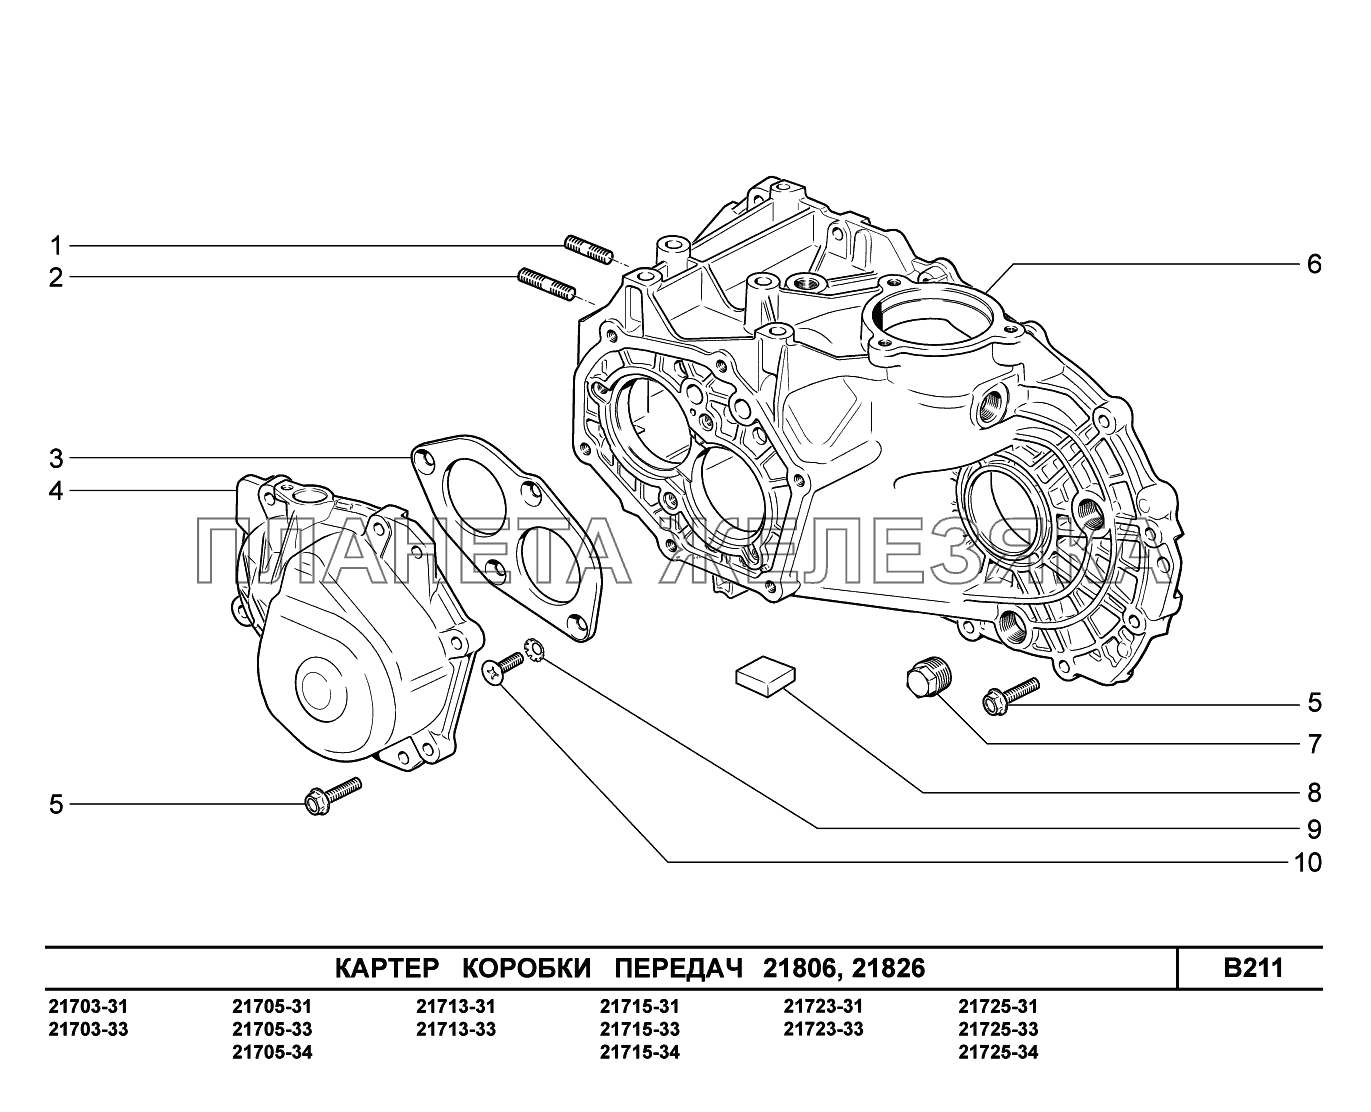 B211. Картер коробки передач ВАЗ-2170 